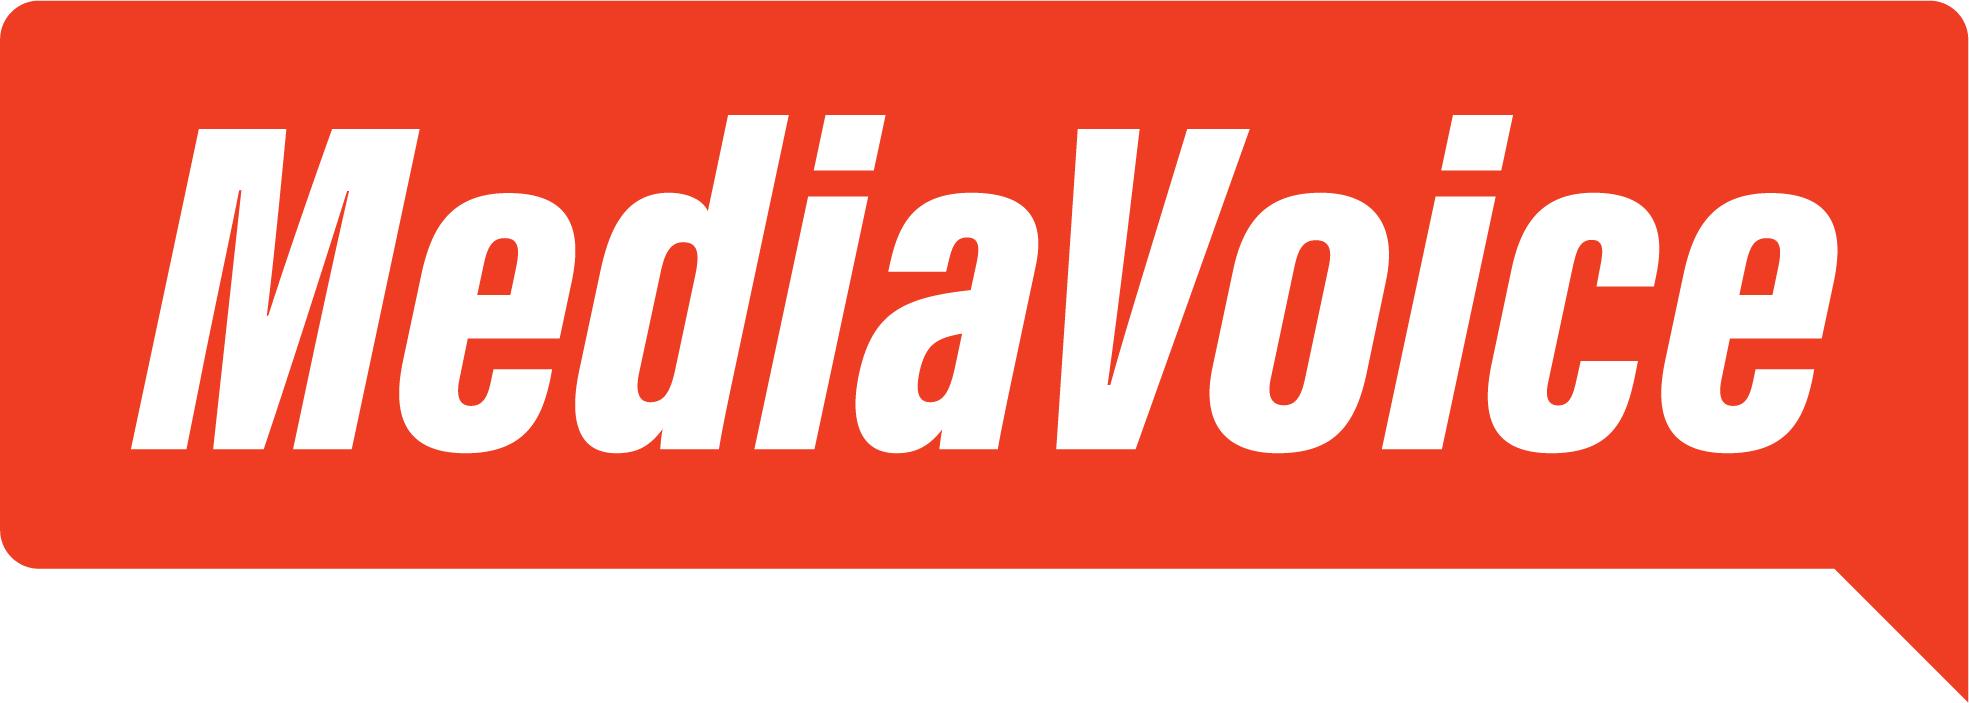 MediaVoice logo